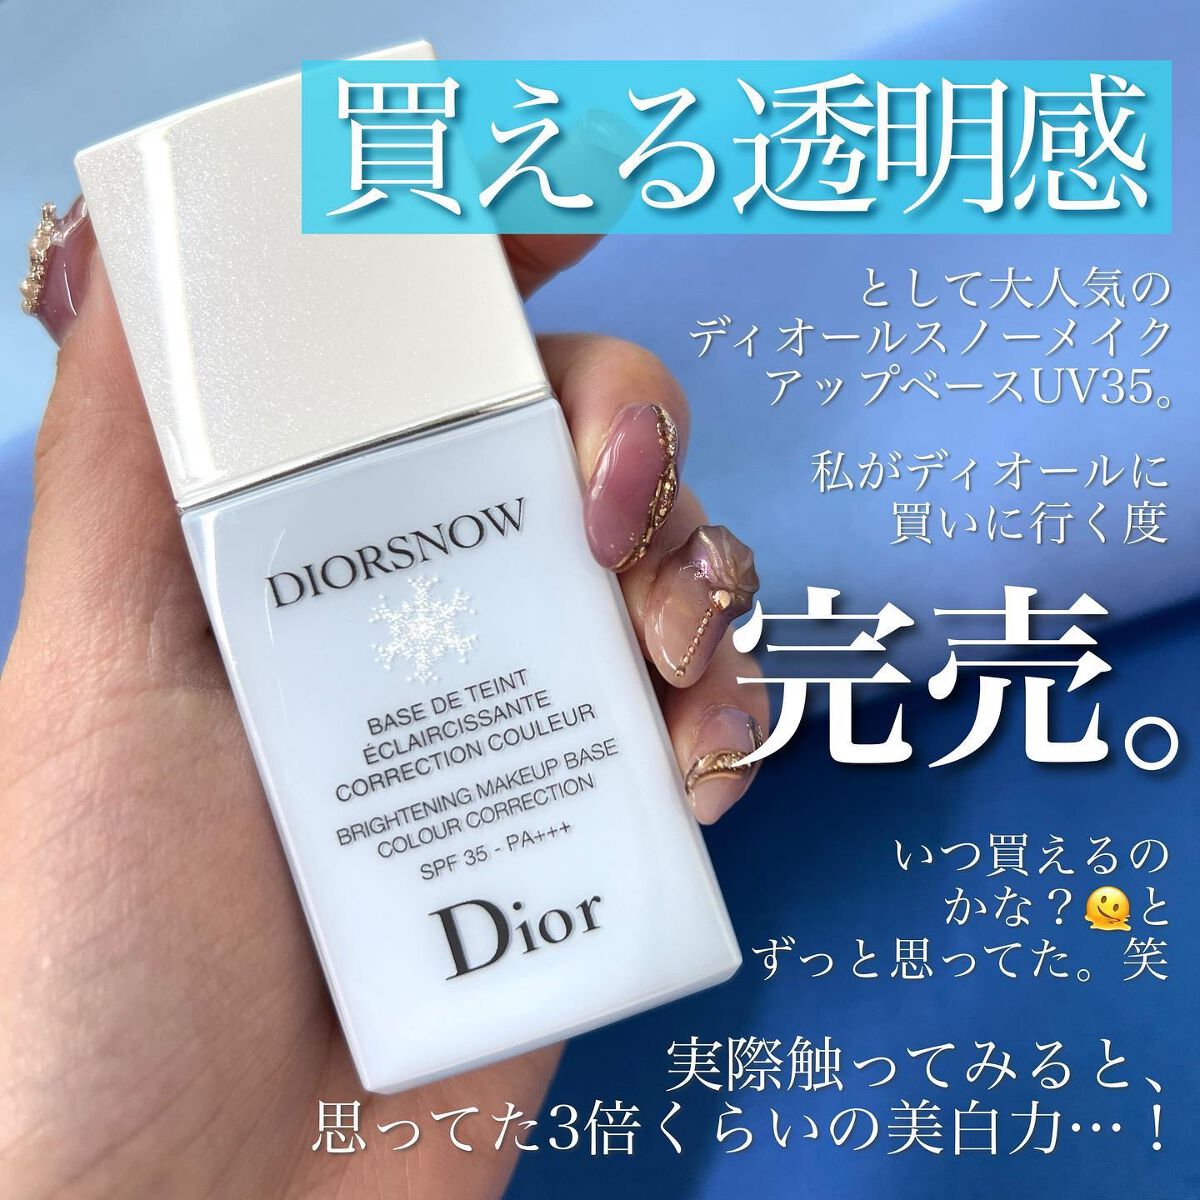 Dior ディオール スノーメイクアップベース UV35 ブルー